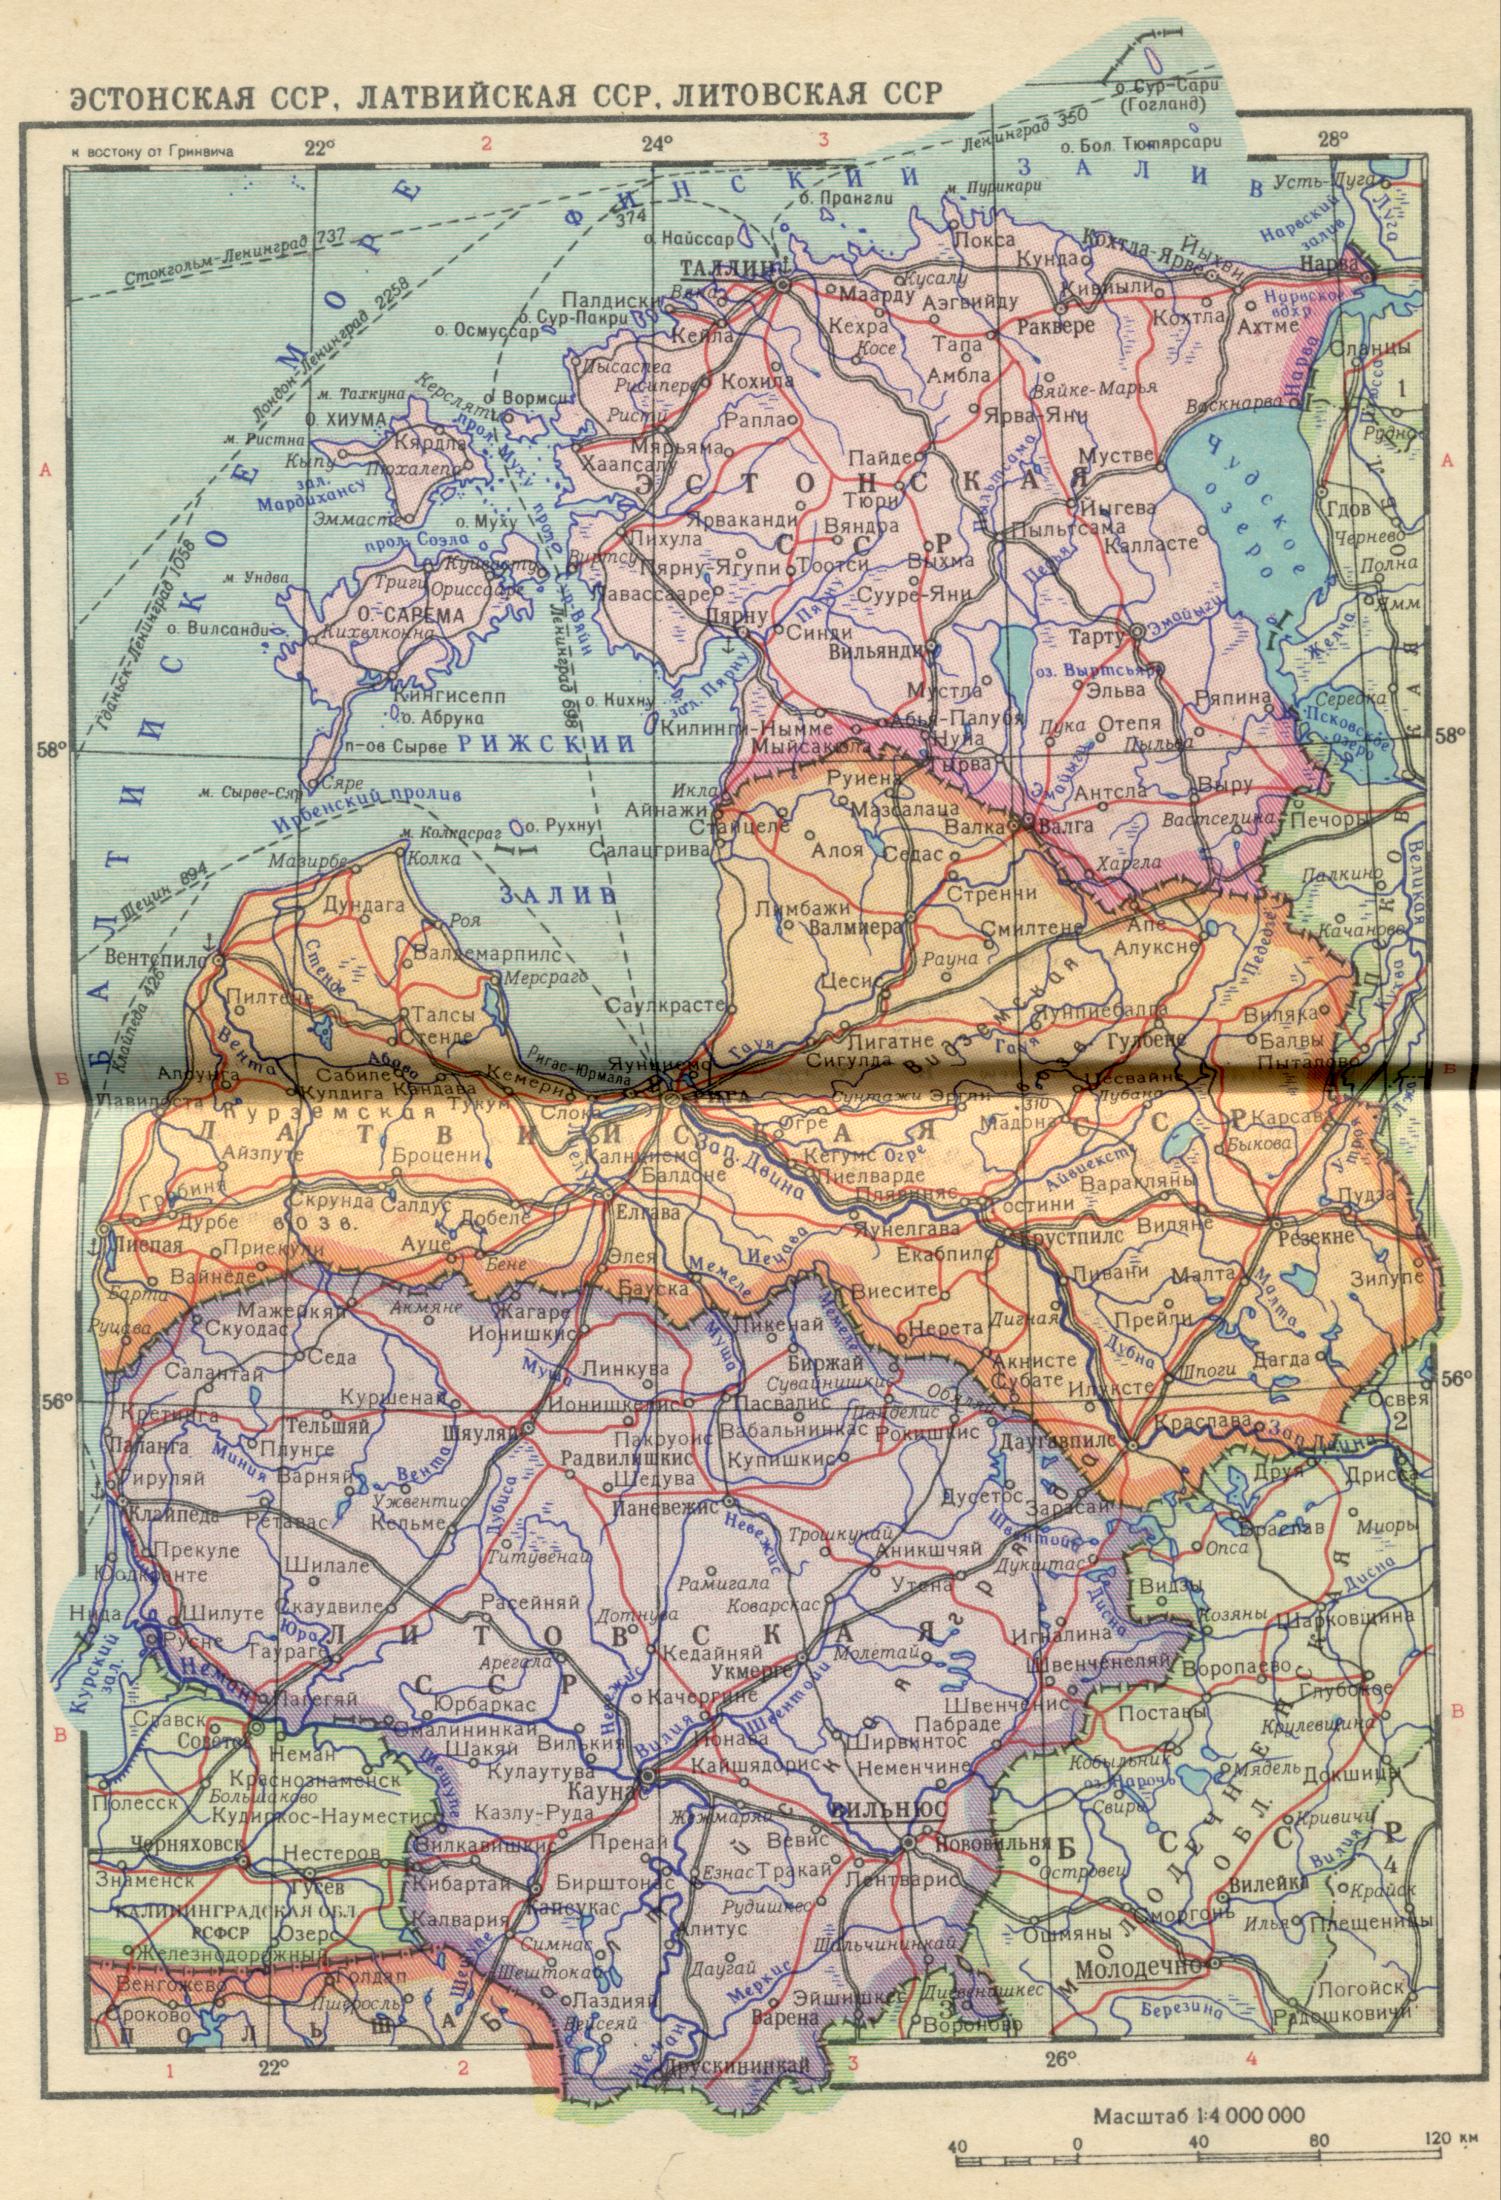 1956. Die politische Landkarte der Welt - Estnischen SSR, Lettischen SSR, Litauischen SSR. Laden Sie die Karte